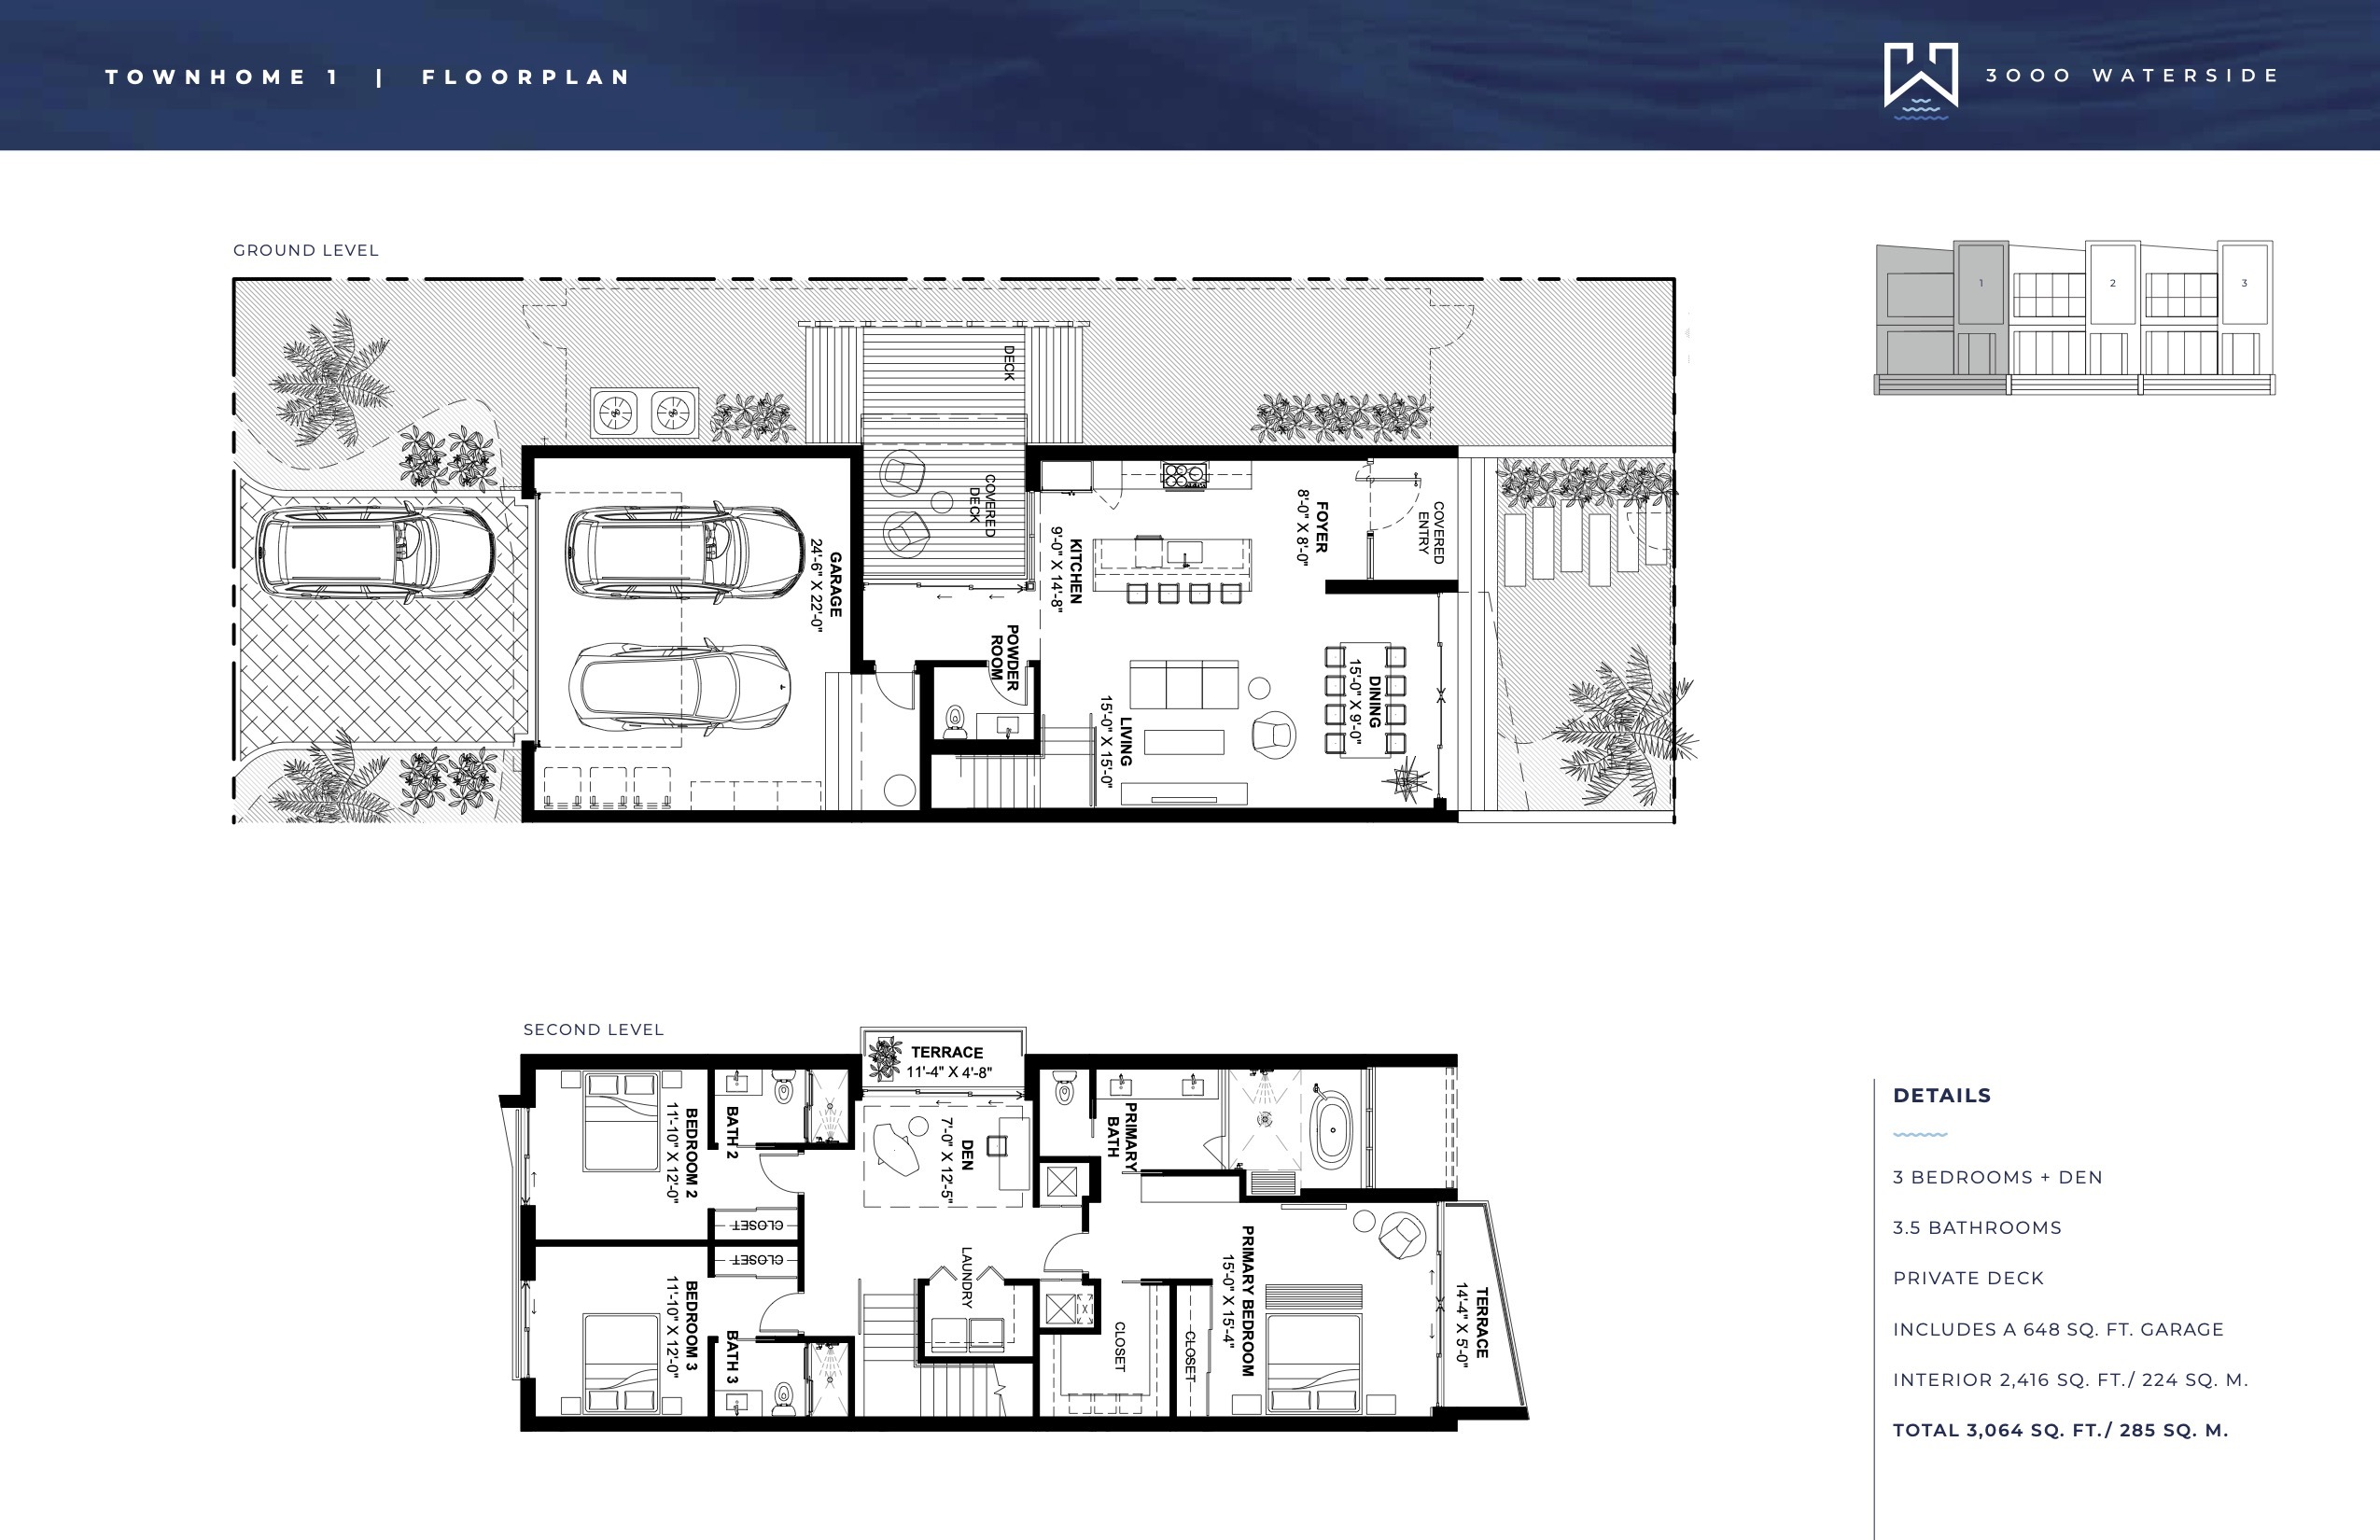 Floor Plan for 3000 Waterside Fort Lauderdale Floorplans, Townhome 1